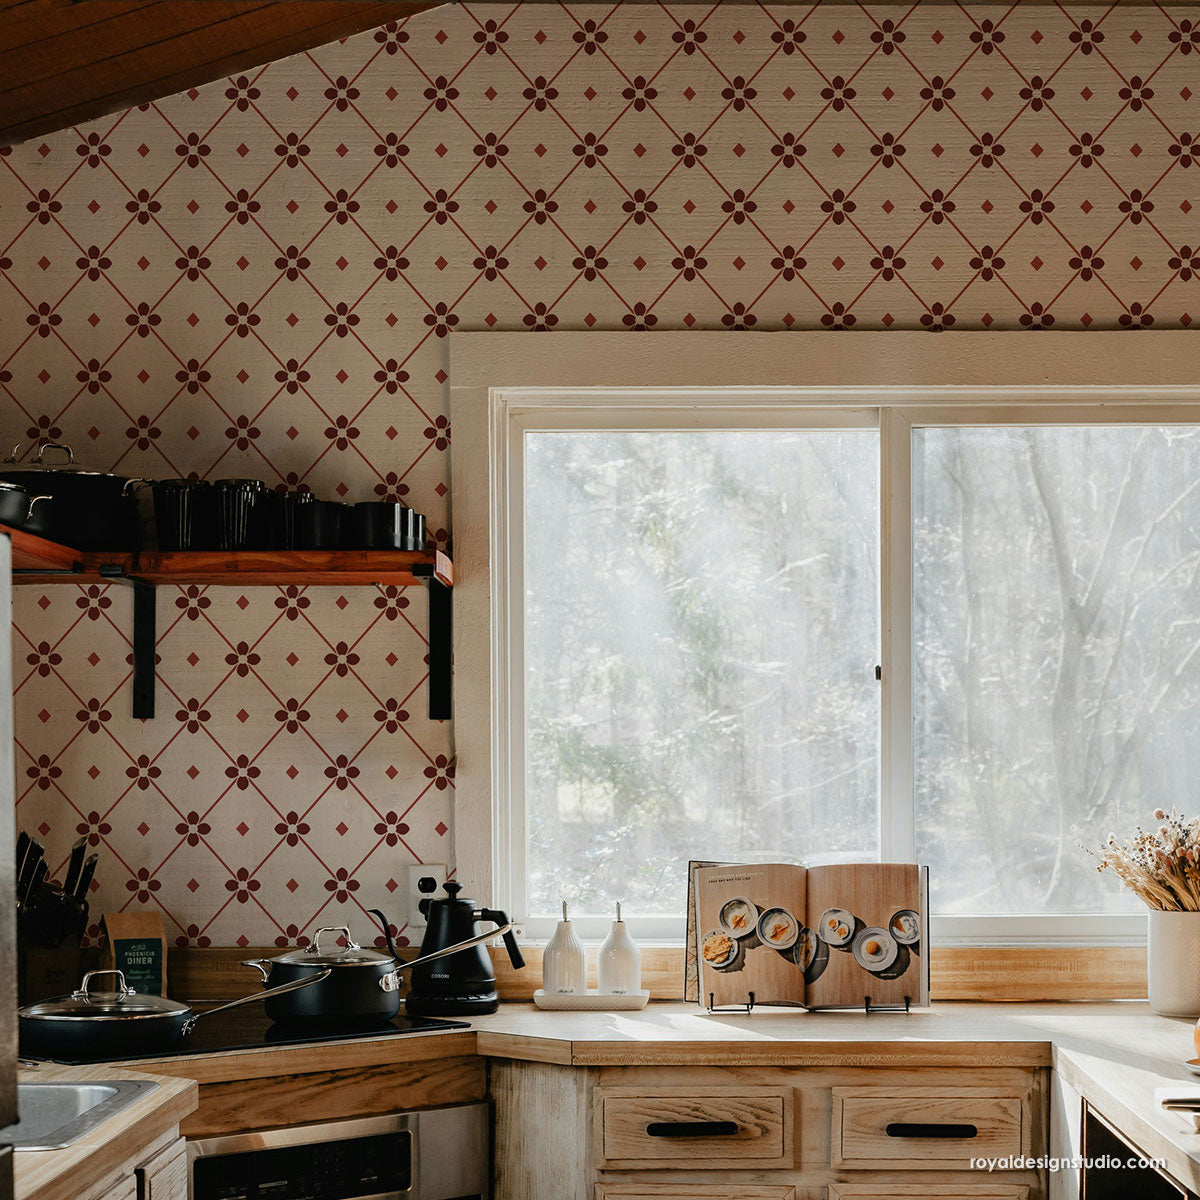 Cottage core kitchen stencil trend